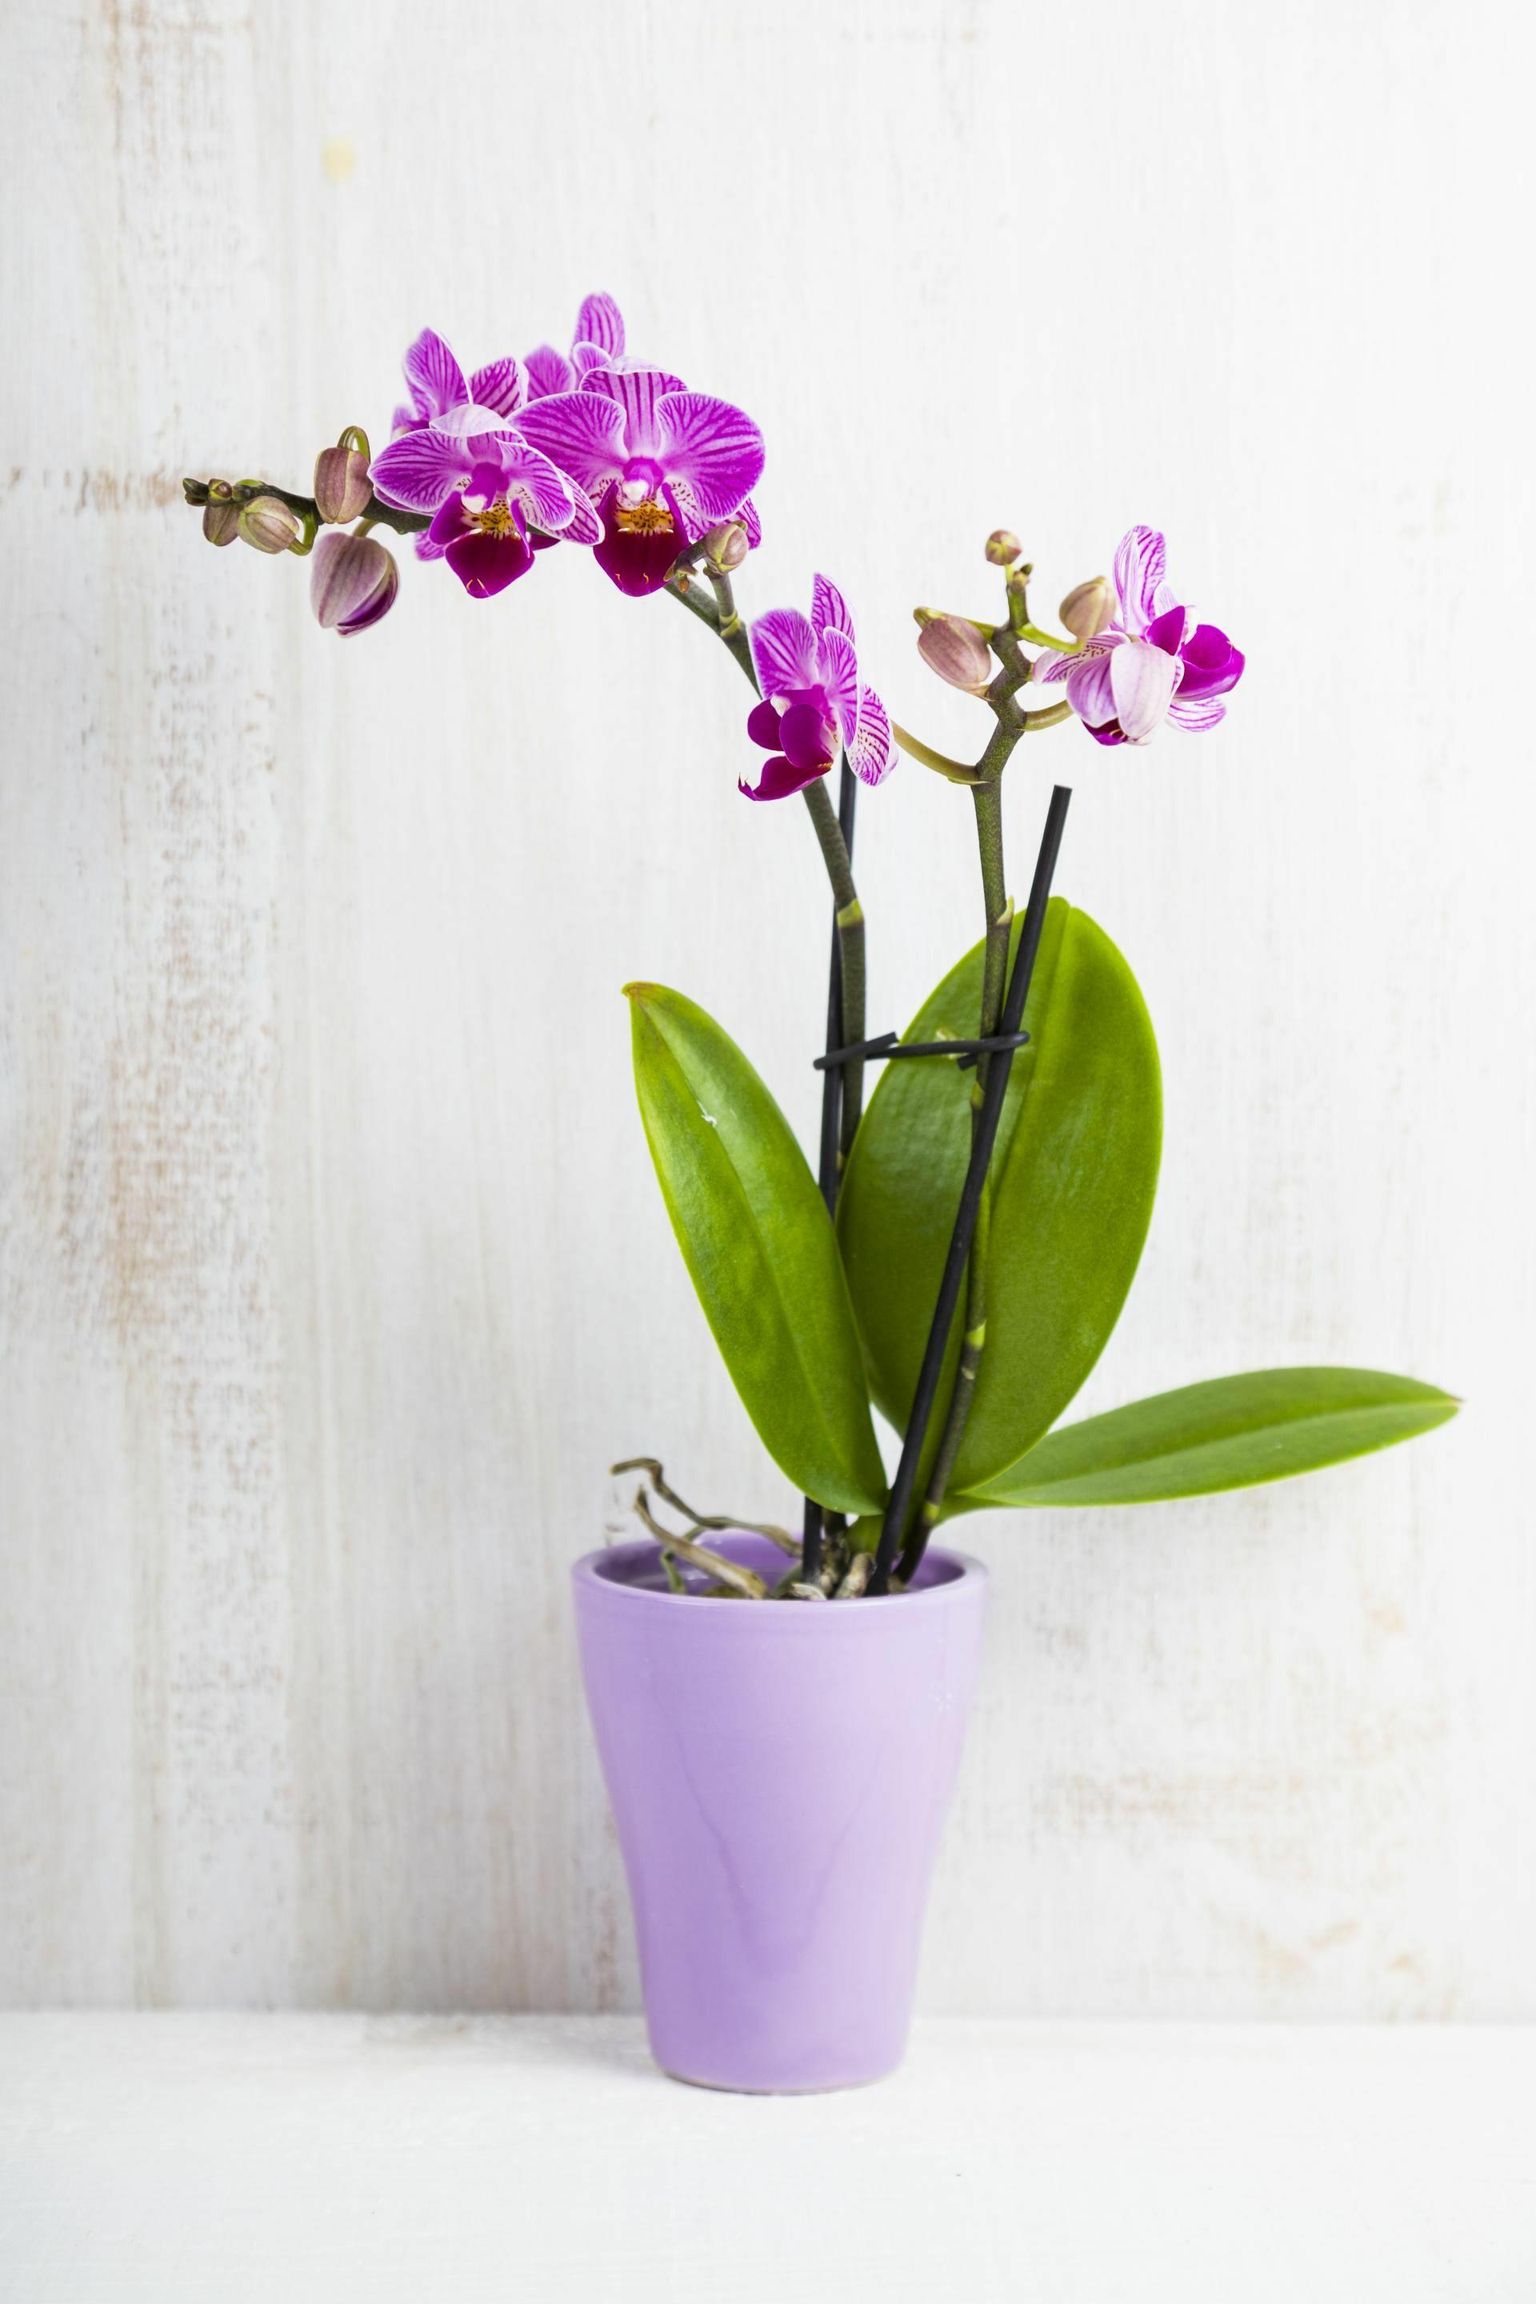 Kuuking on Eesti kodudes kõige levinum ja lihtsamini kasvatatav orhidee.